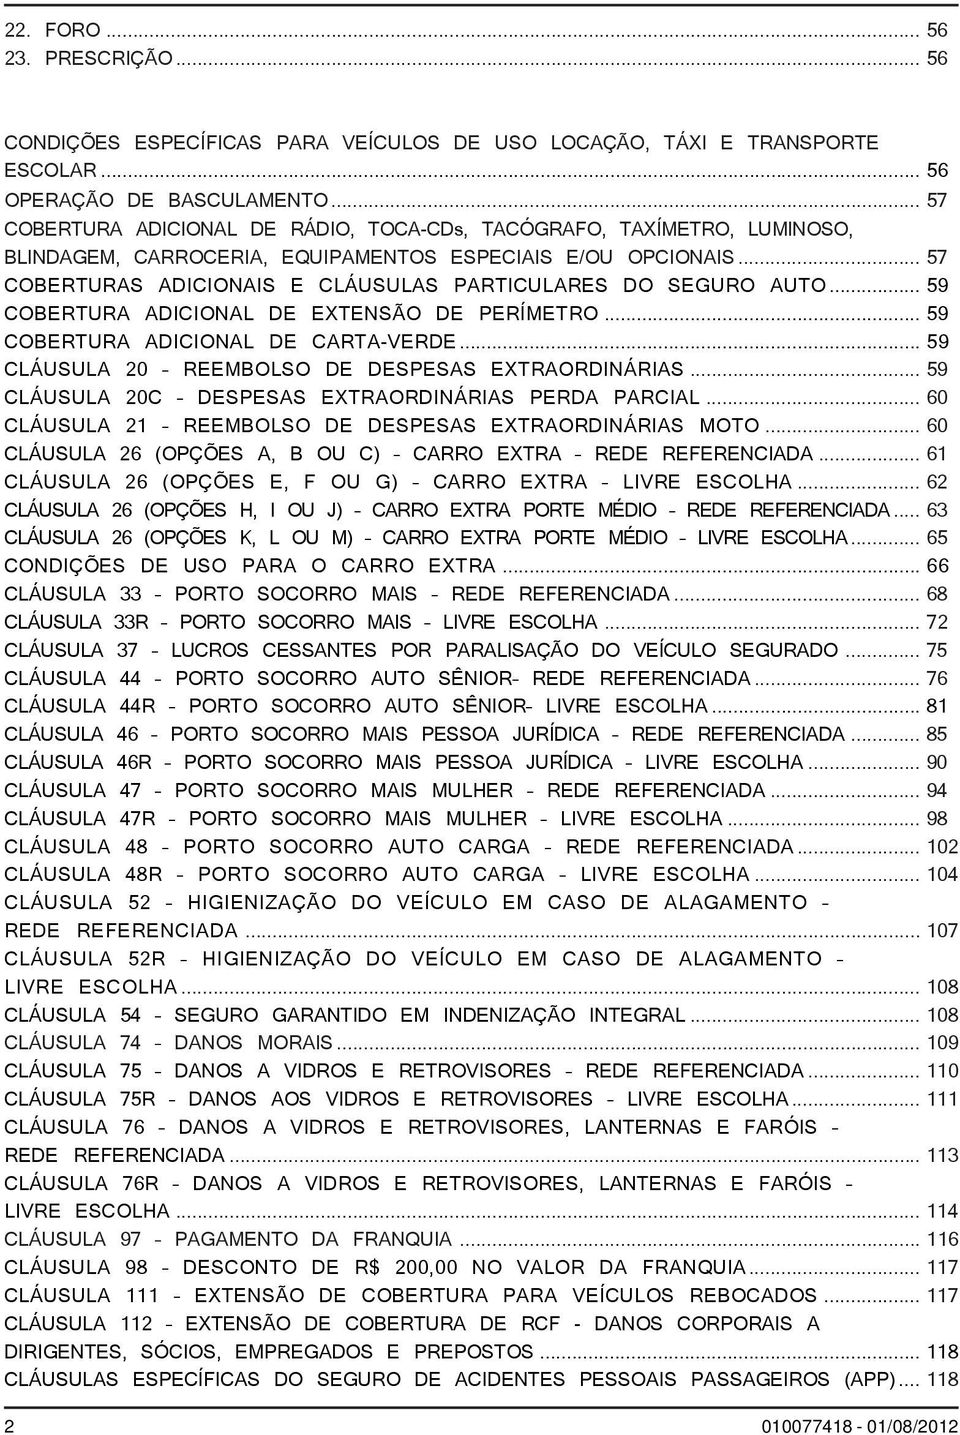 .. 57 COBERTURAS ADICIONAIS E CLÁUSULAS PARTICULARES DO SEGURO AUTO... 59 COBERTURA ADICIONAL DE EXTENSÃO DE PERÍMETRO... 59 COBERTURA ADICIONAL DE CARTA-VERDE.